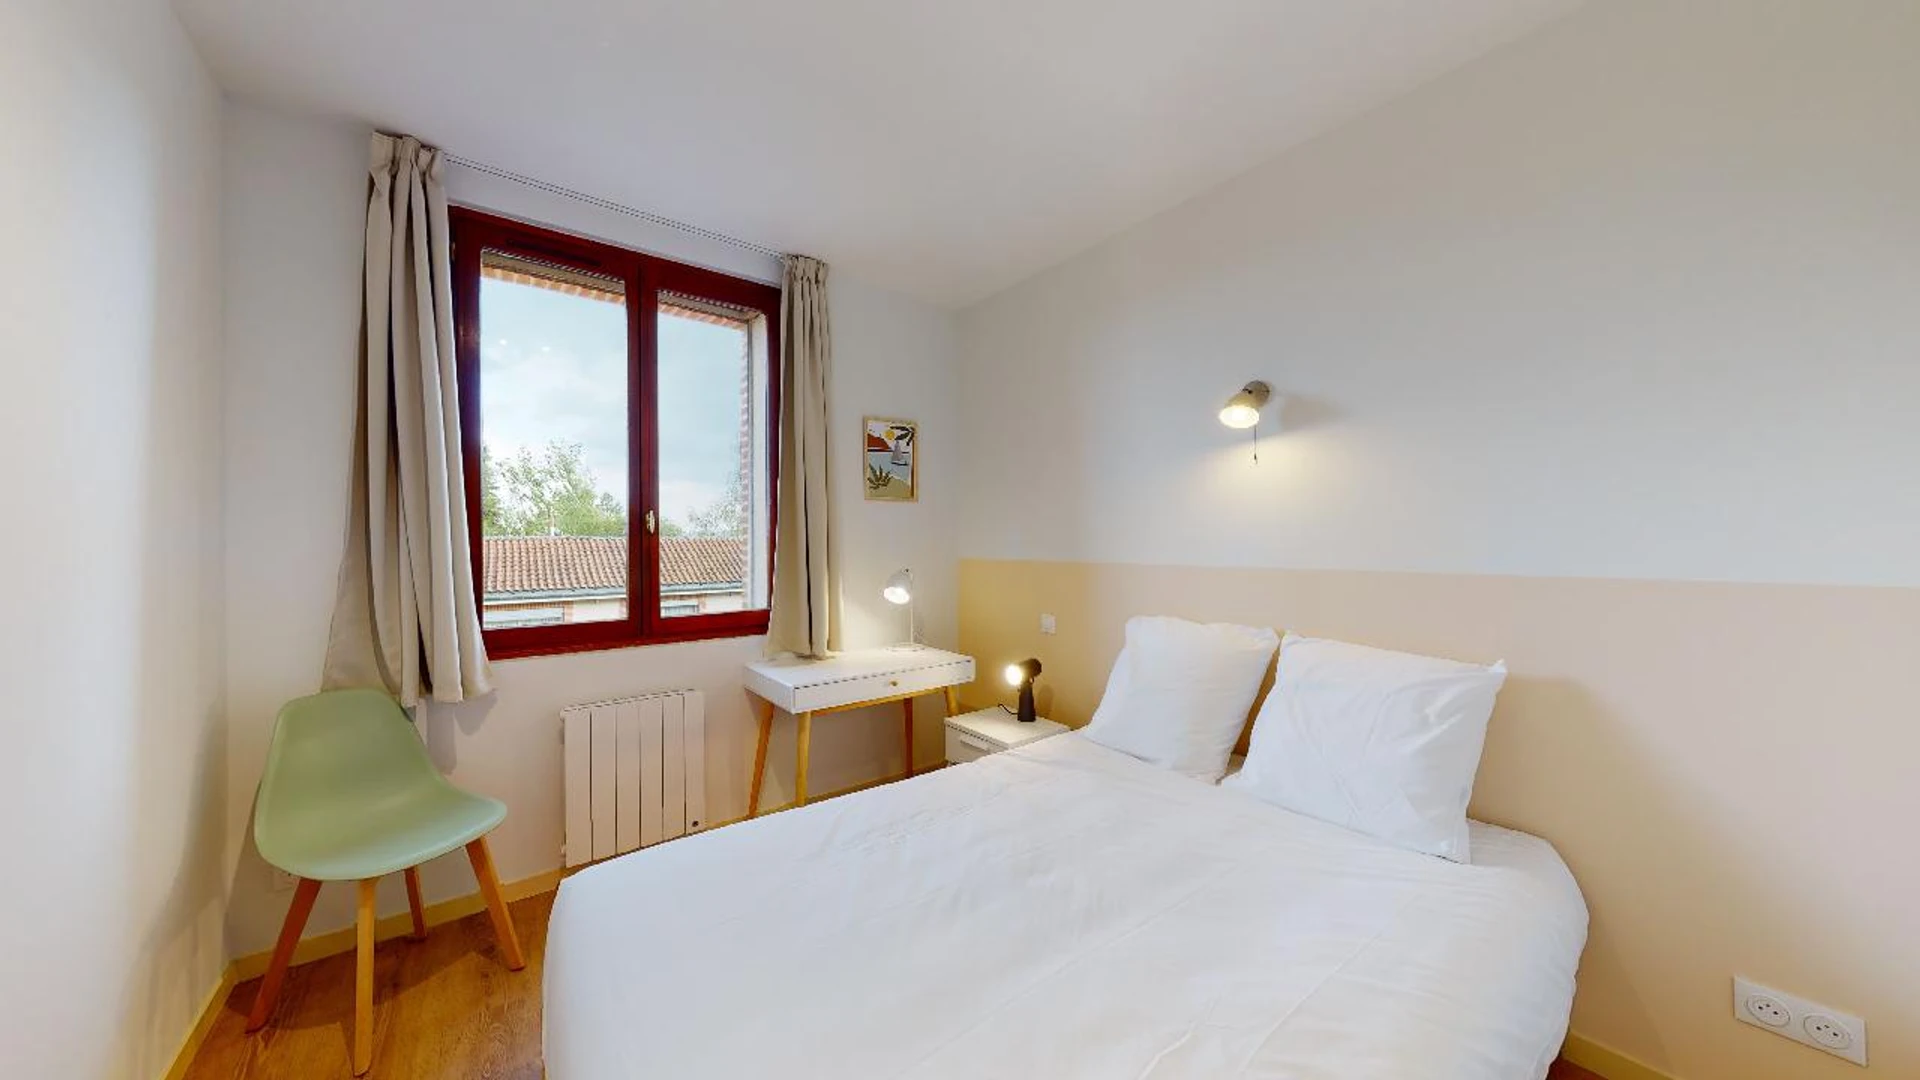 Toulouse de çift kişilik yataklı kiralık oda